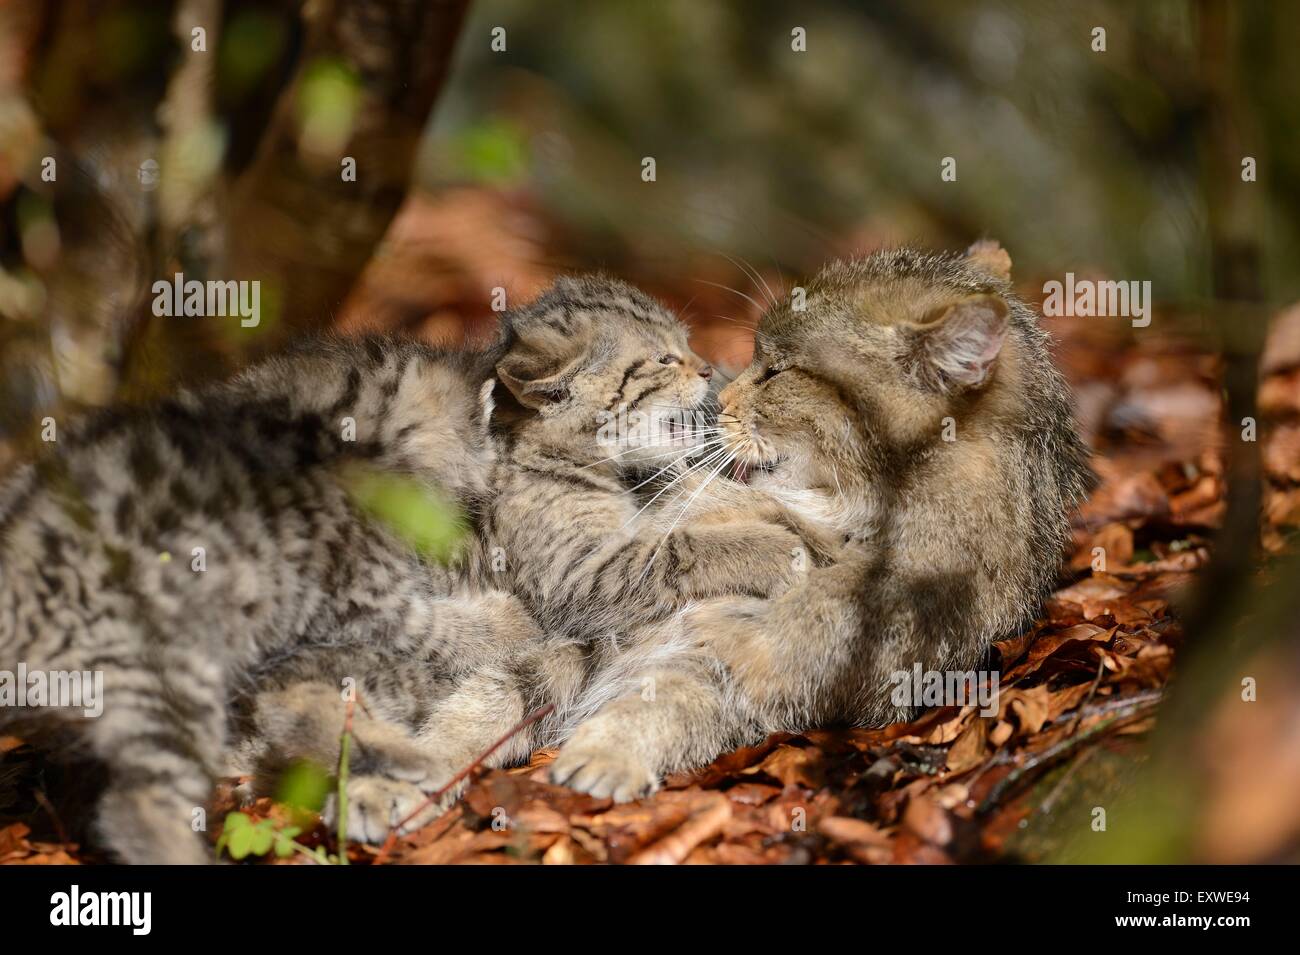 Due gatto selvatico europeo gattini nel Parco Nazionale della Foresta Bavarese, Germania Foto Stock